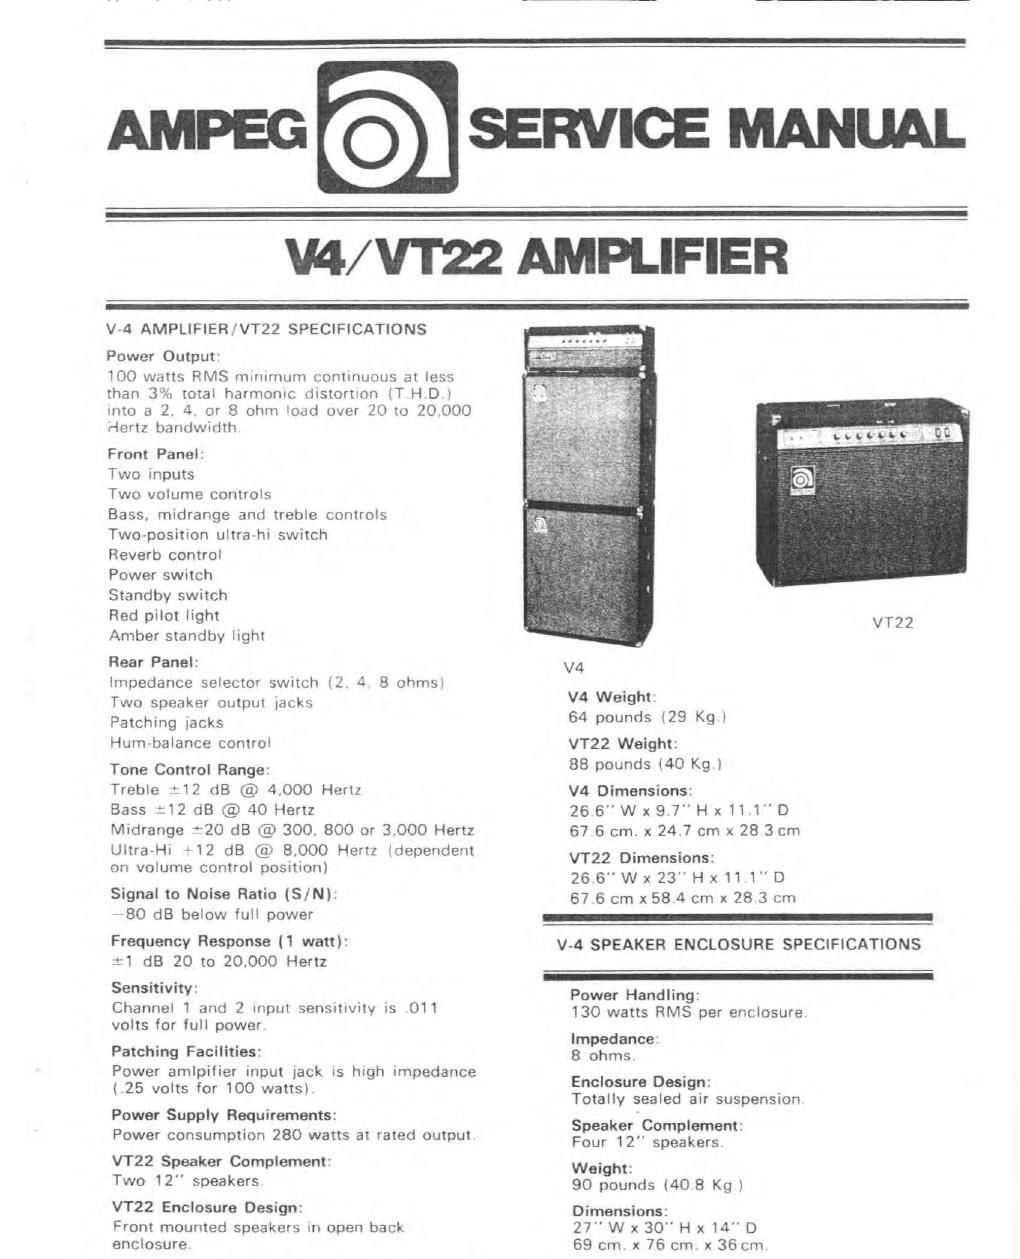 ampeg v 4 vt 22 service manual